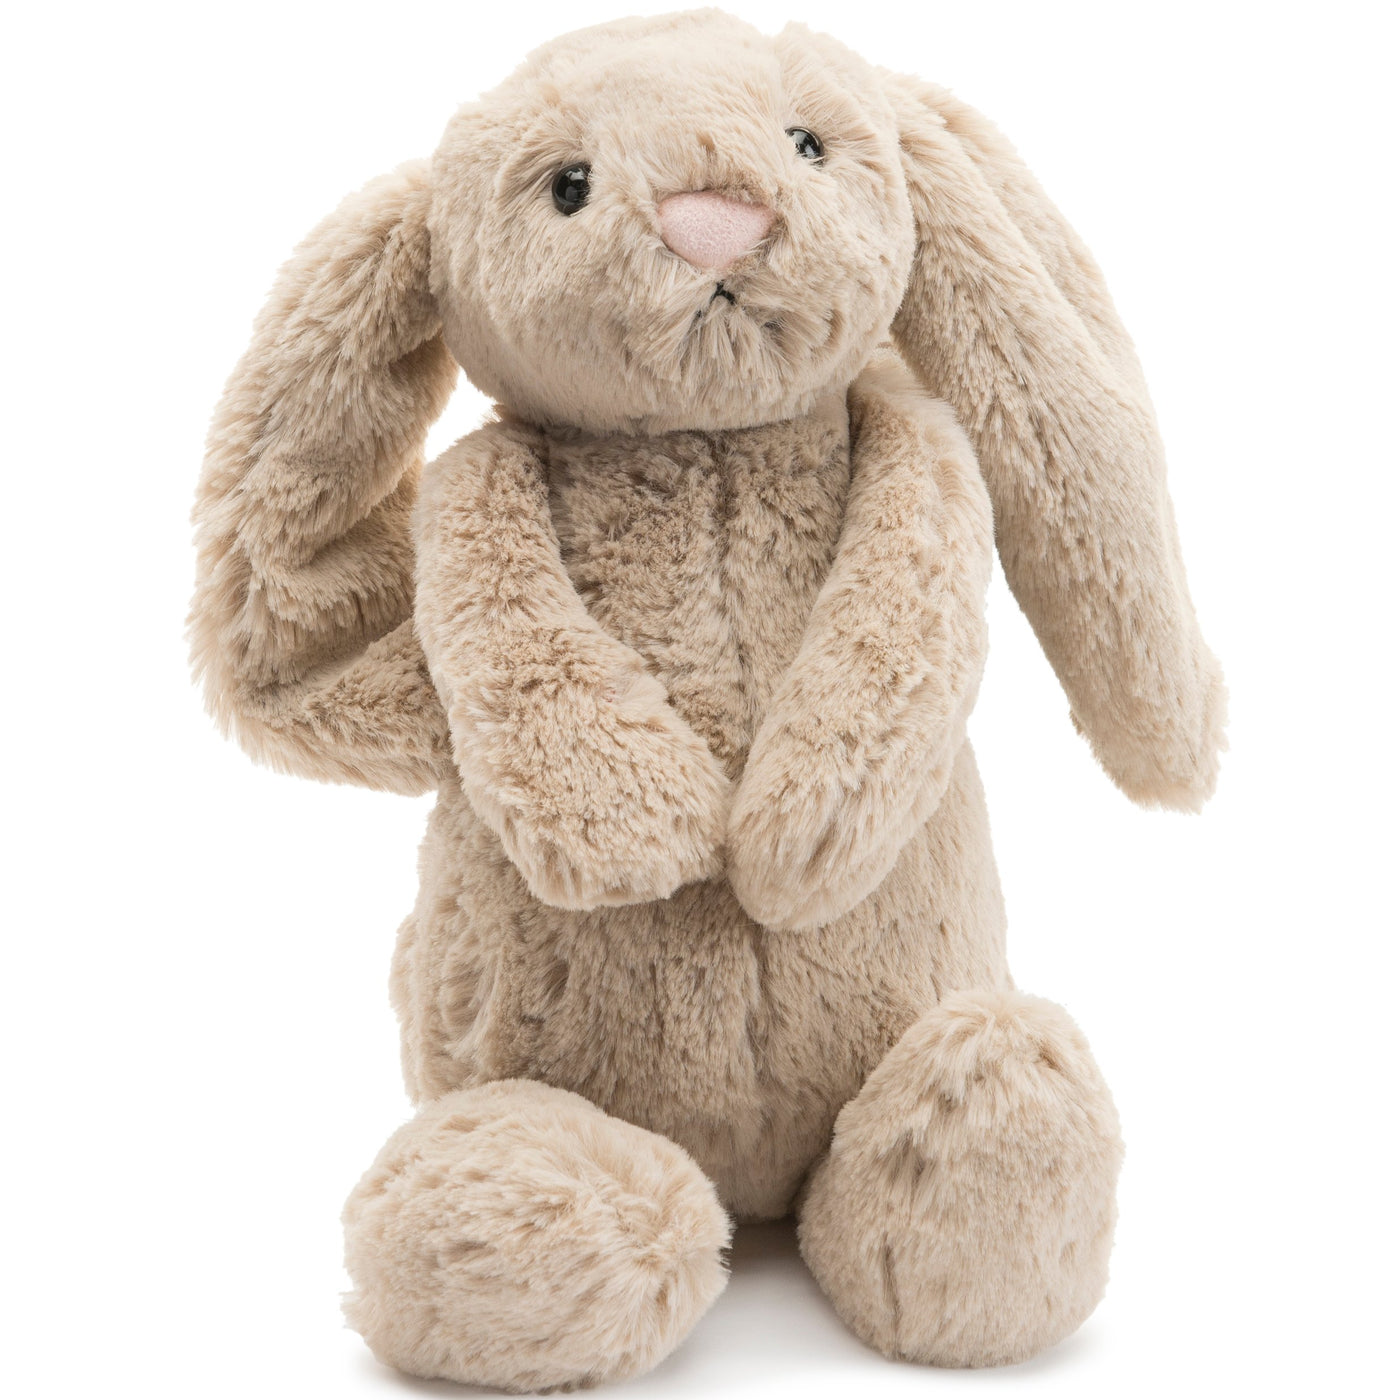 Jellycat: Bashful Beige Bunny (Multiple Sizes)